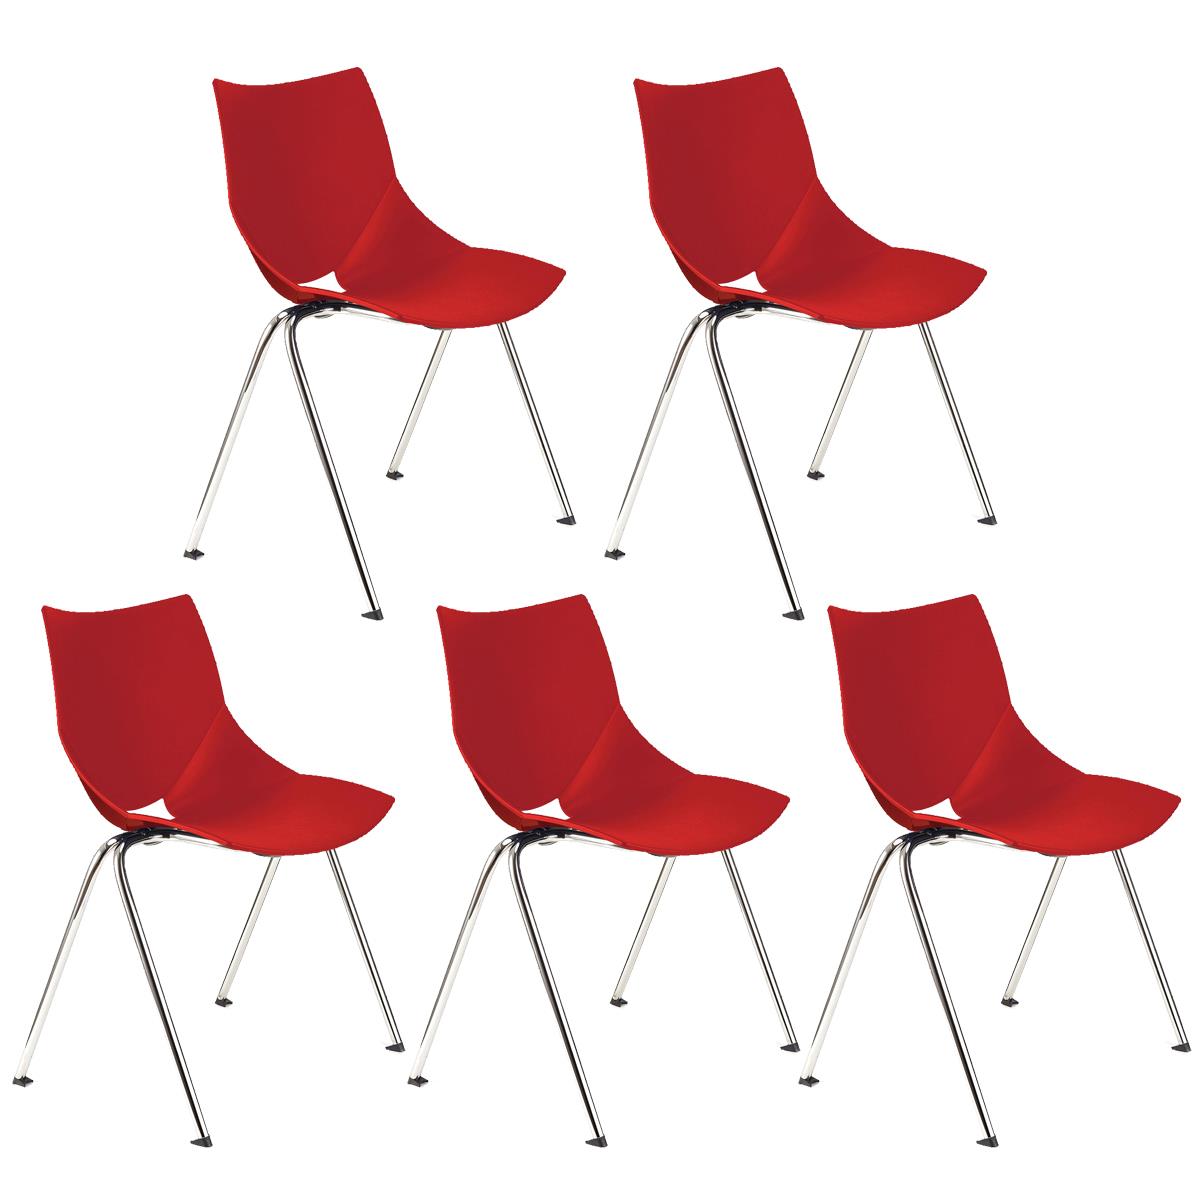 Lote 5 Cadeiras de Visita AMIR, Confortável e Prática, Empilhável, Cor Vermelho